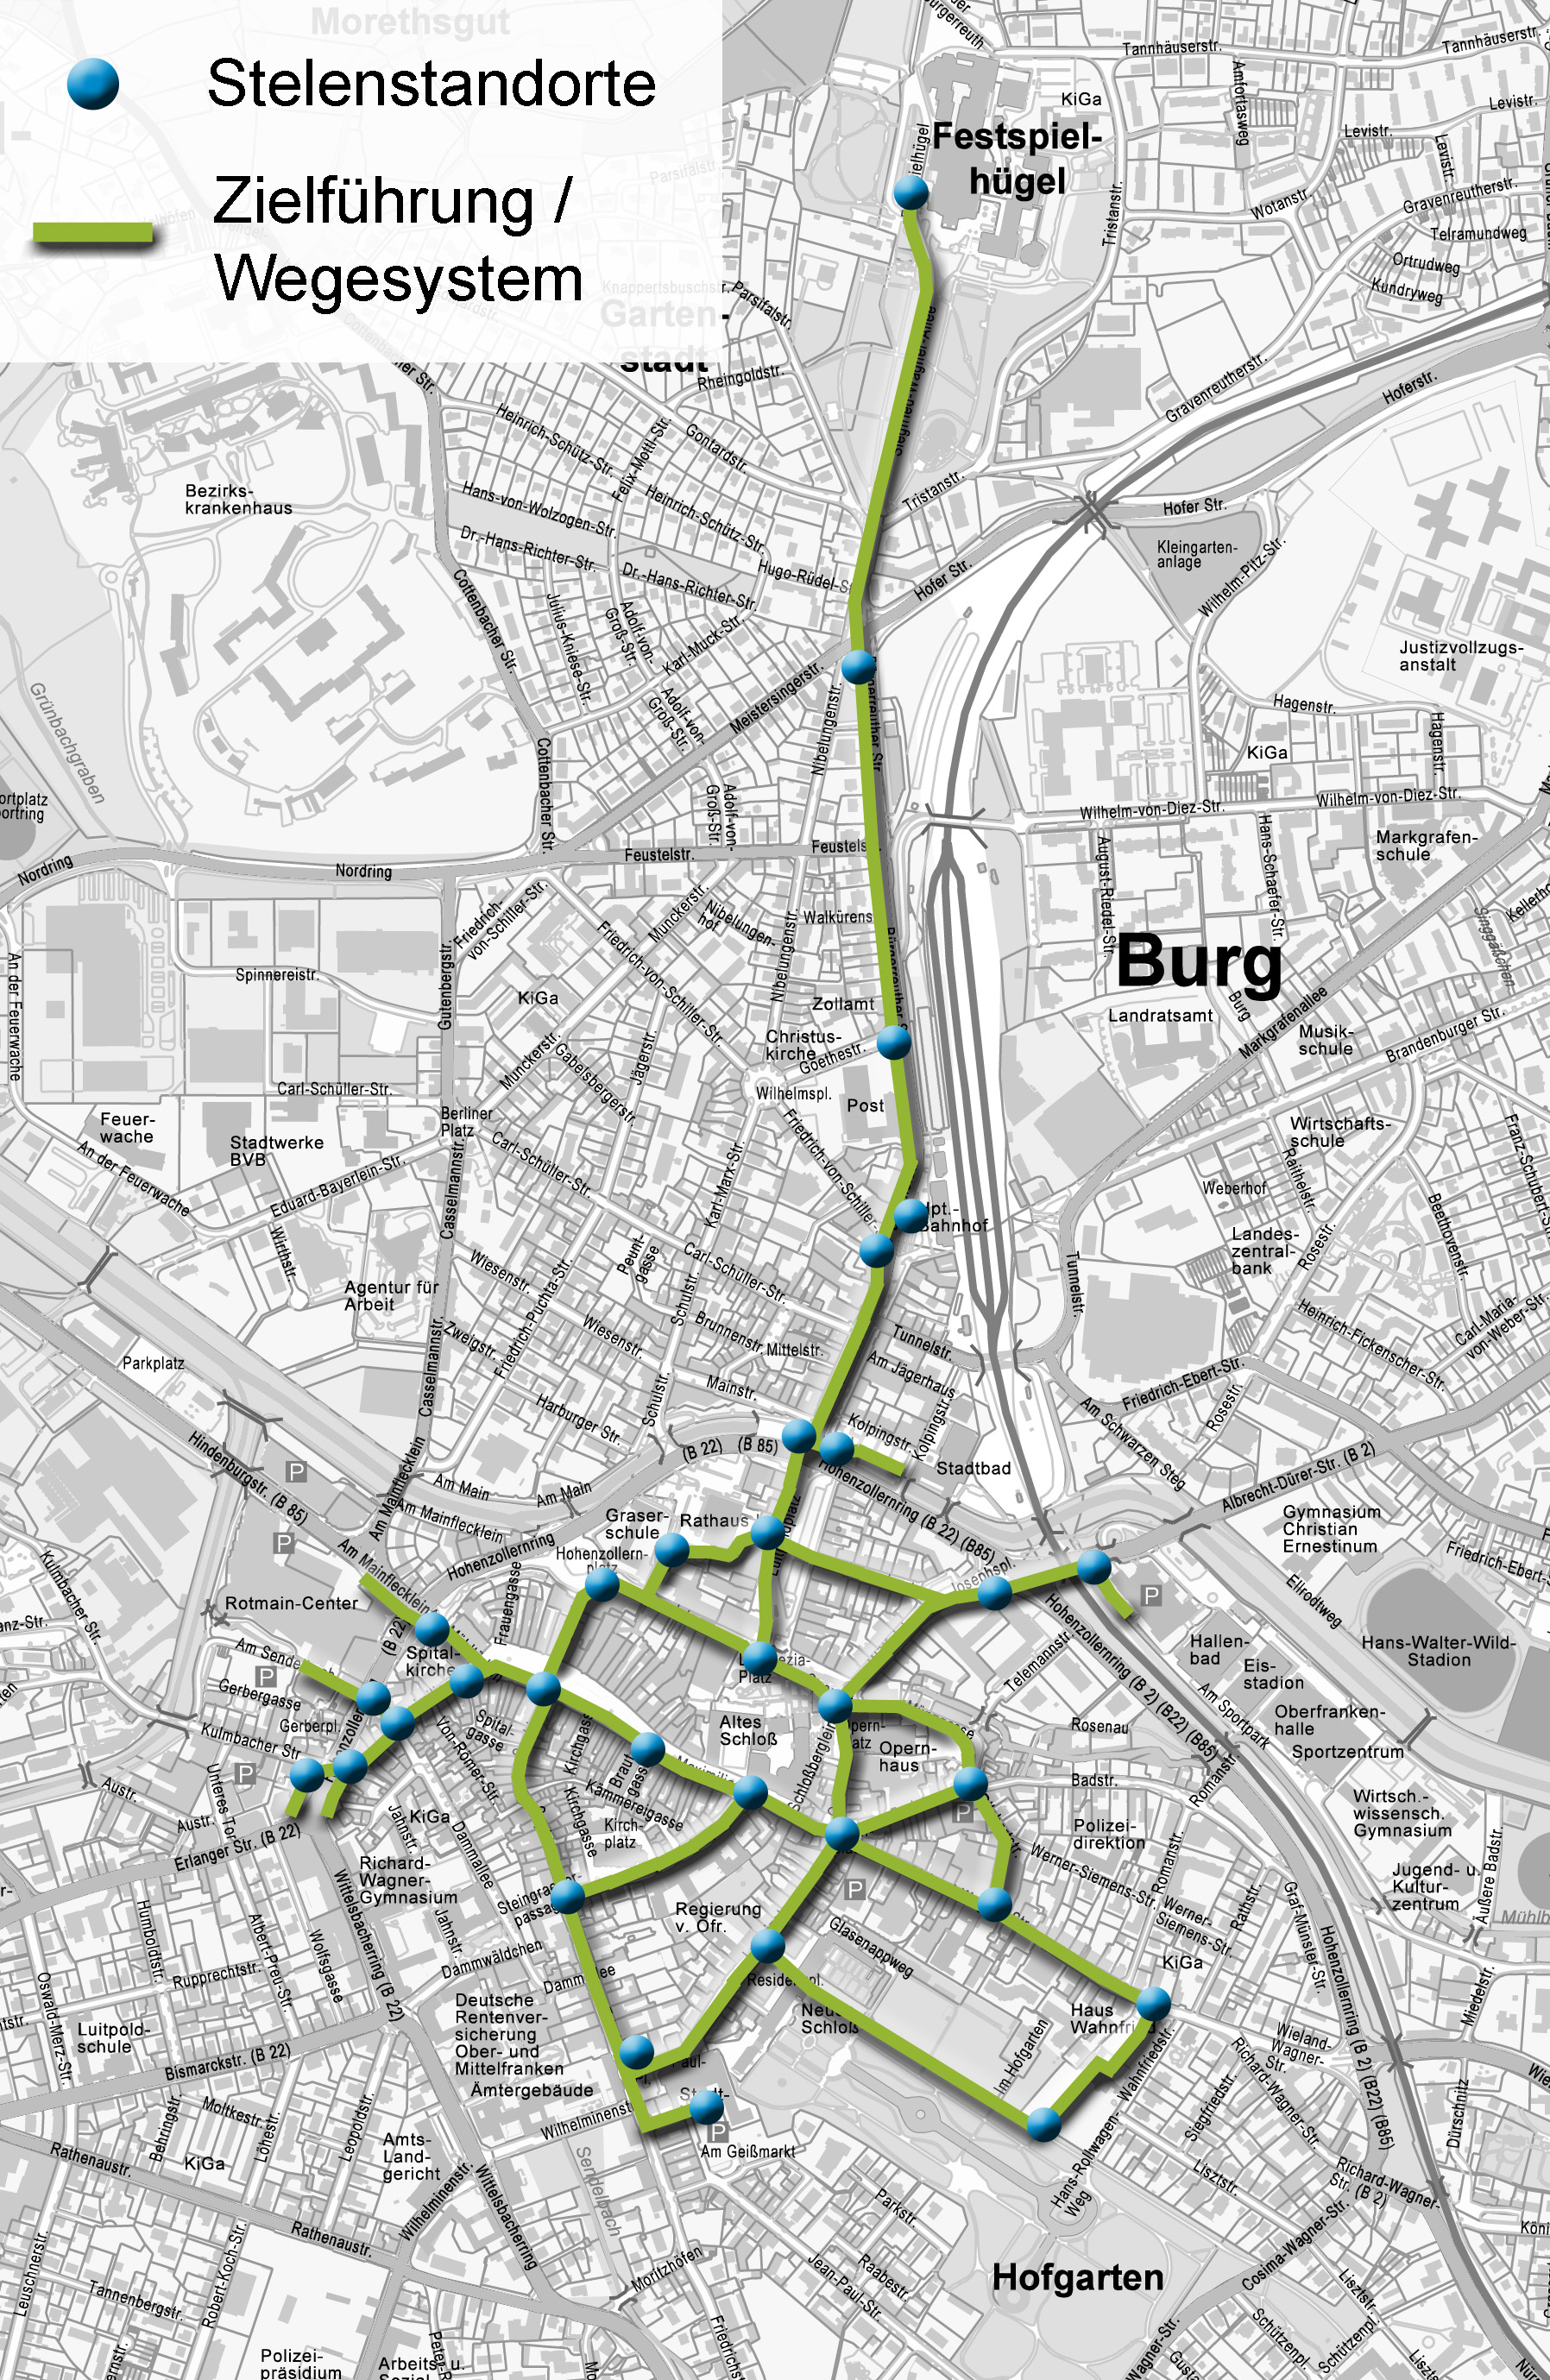 Stadtplan mit Punktsymbolen der Stelen-Standorte und Verbindungslinien als Darstellung der Wegeführung